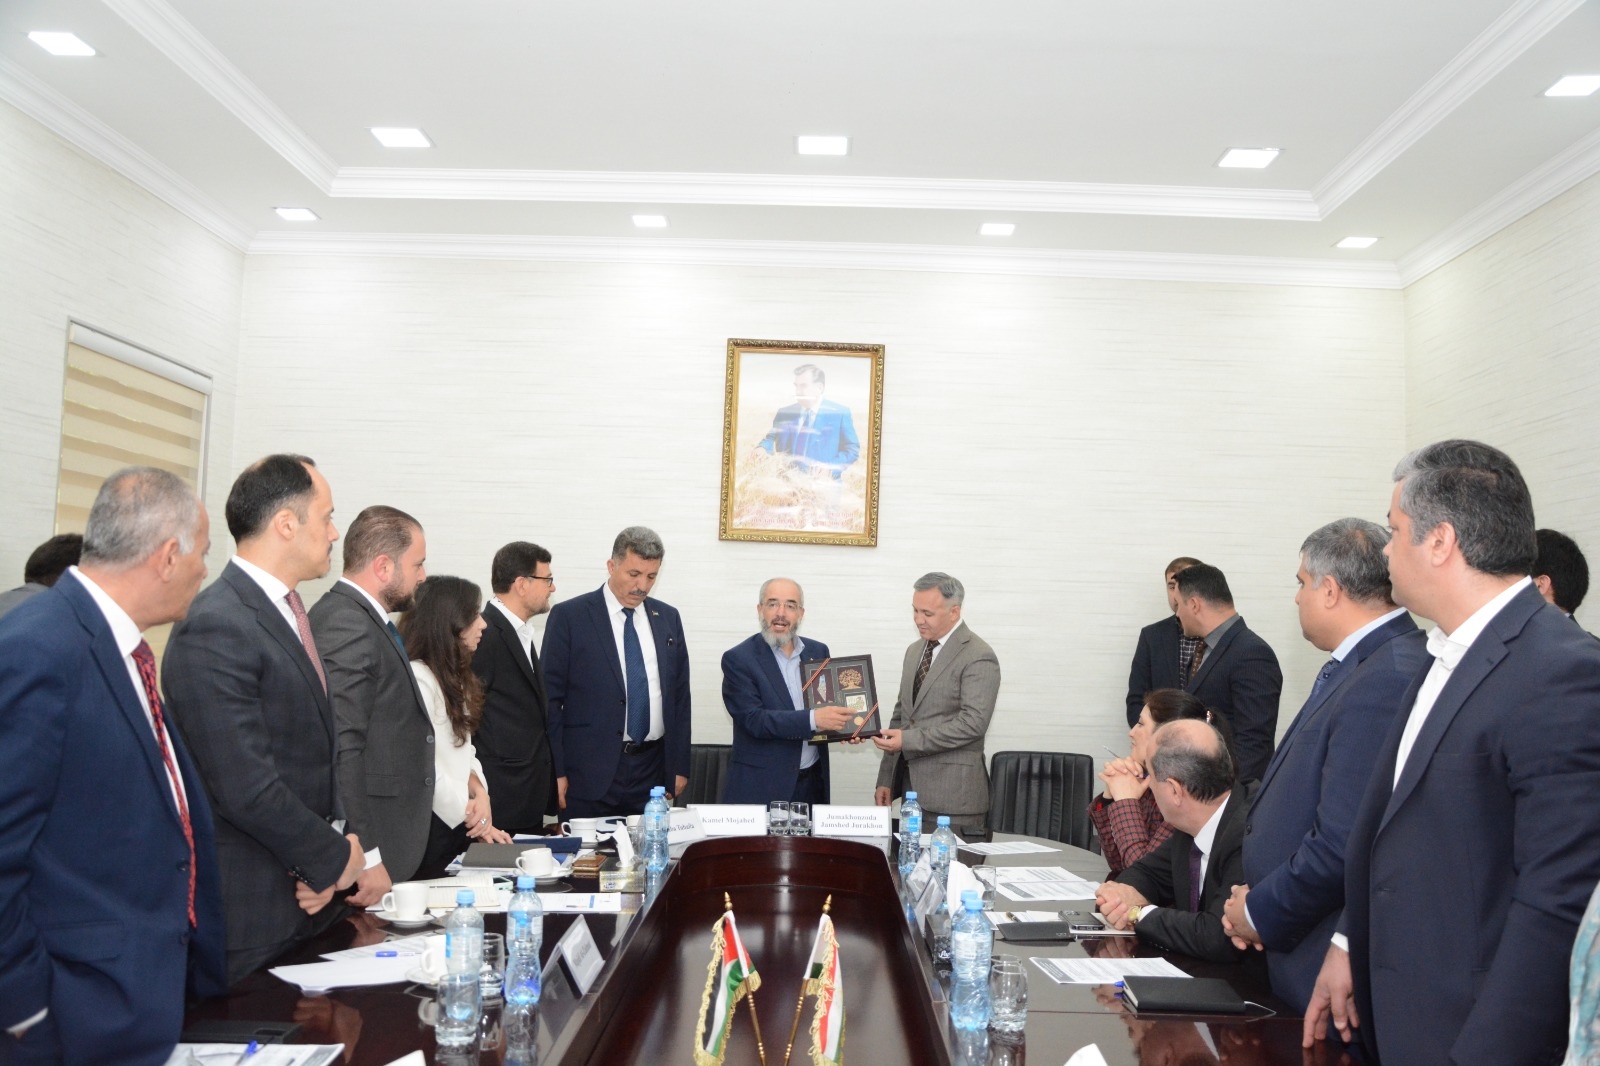 فلسطين وطاجيكستان توقعان اتفاقية تأسيس مجلس رجال الأعمال المشترك